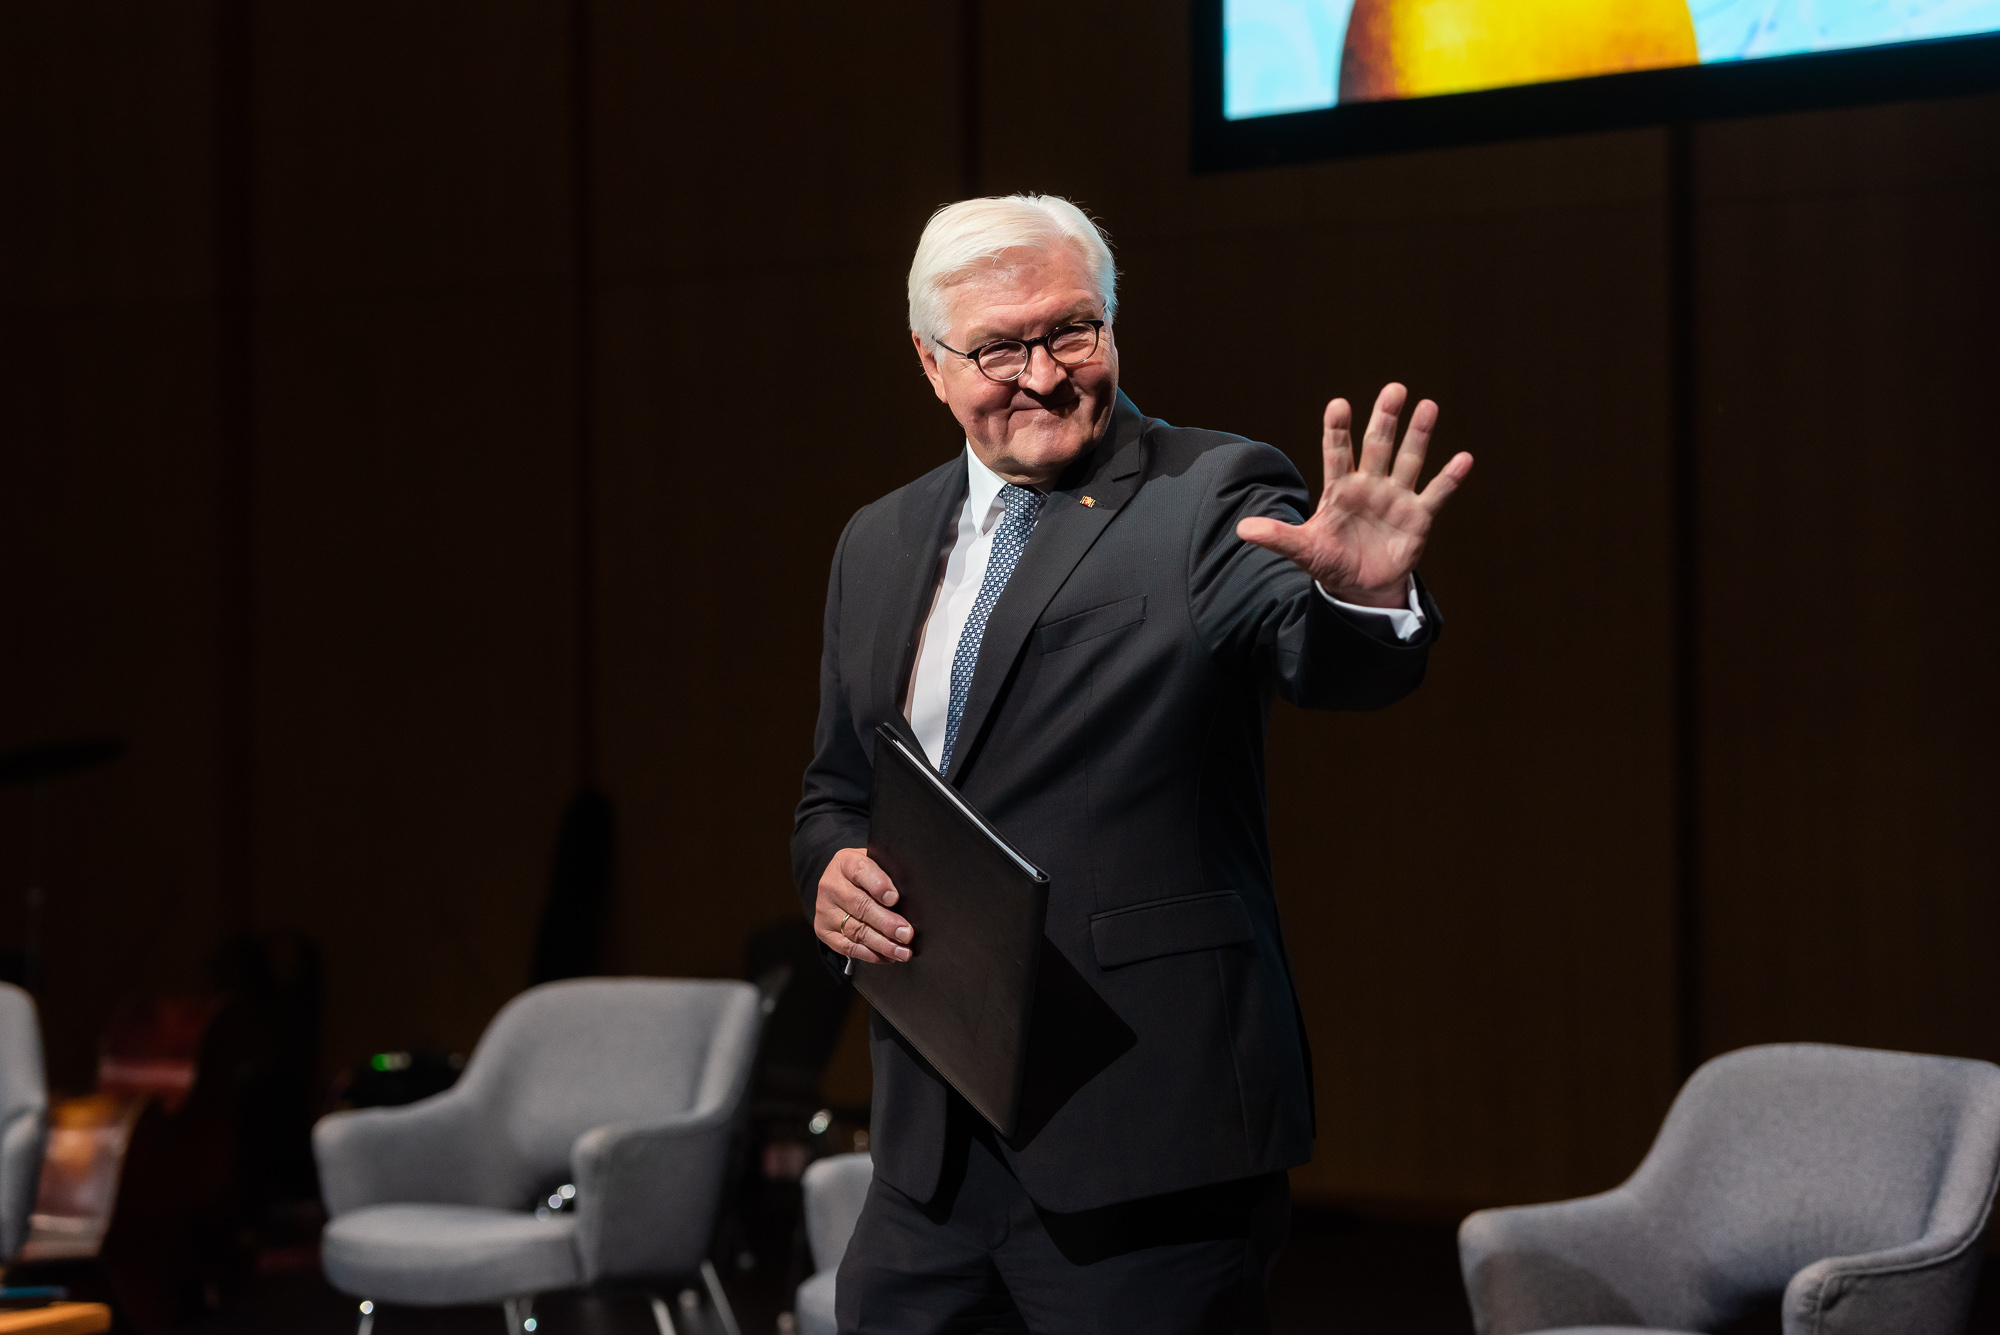 Bundespräsident Frank-Walter Steinmeier hielt eine bewegende Rede und würdigte die Generation der "Gastarbeiter". Foto: Andreas Schwarz